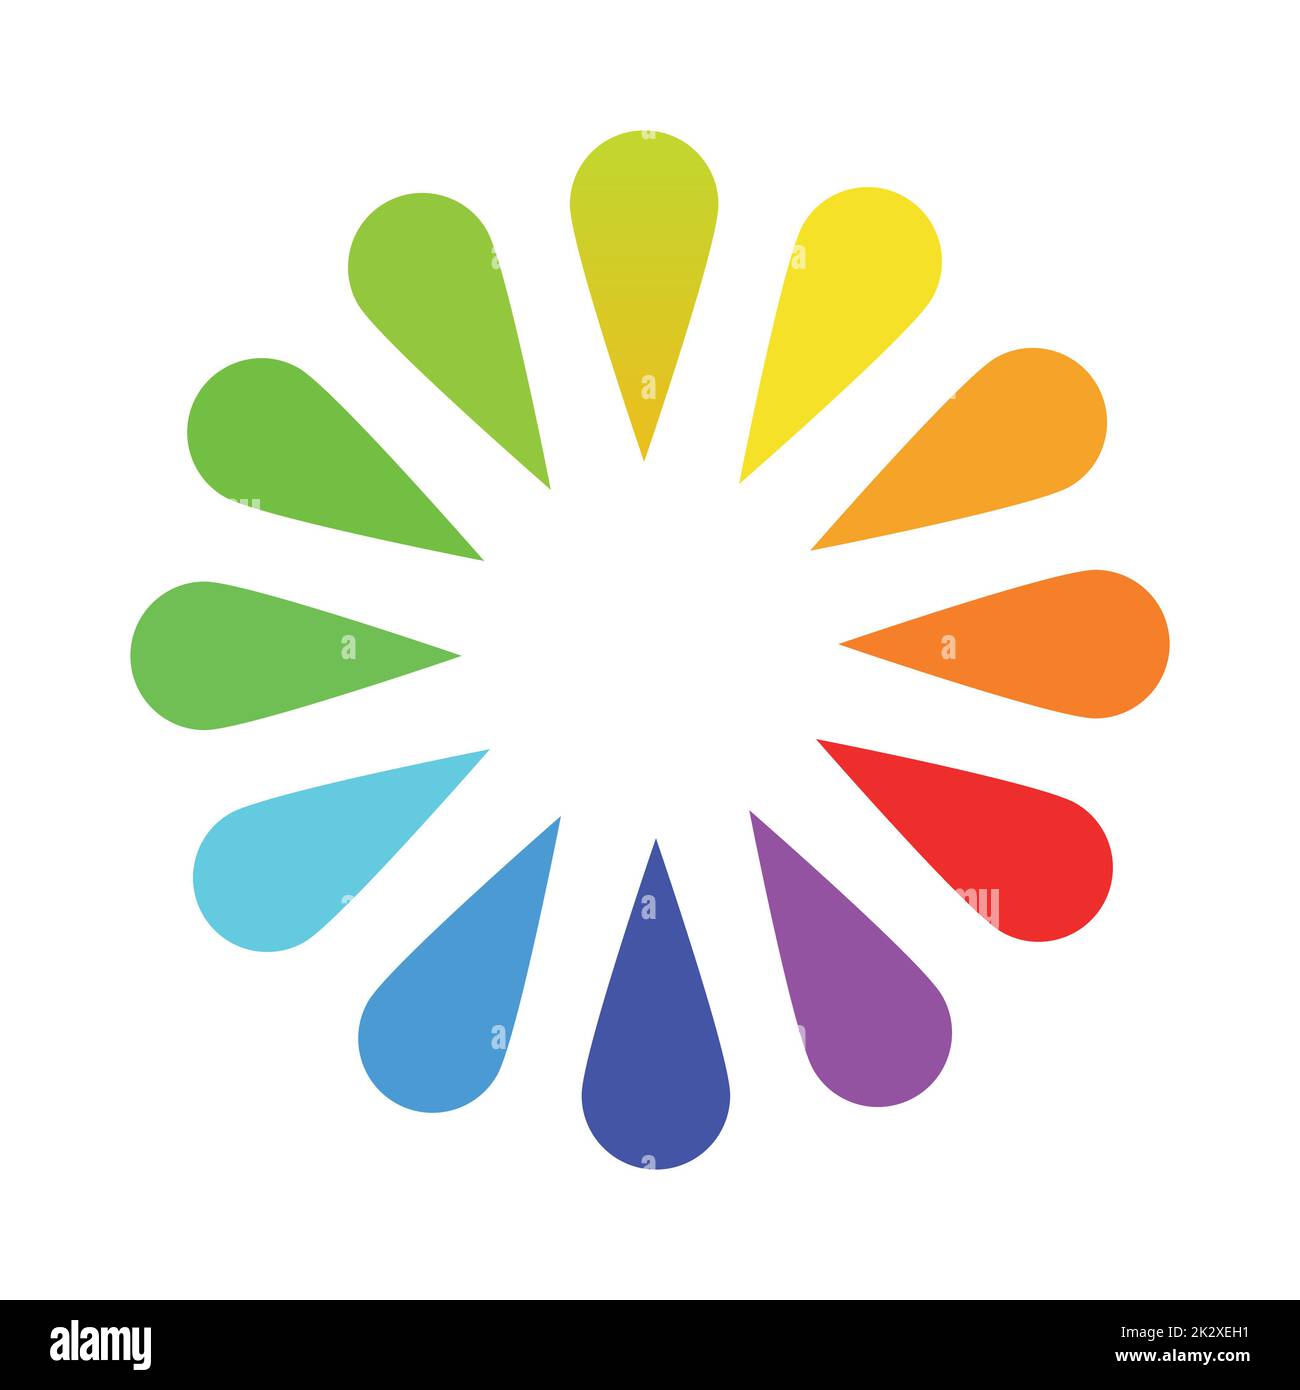 Palette circulaire de toutes les couleurs de l'arc-en-ciel sur fond blanc - vecteur Banque D'Images